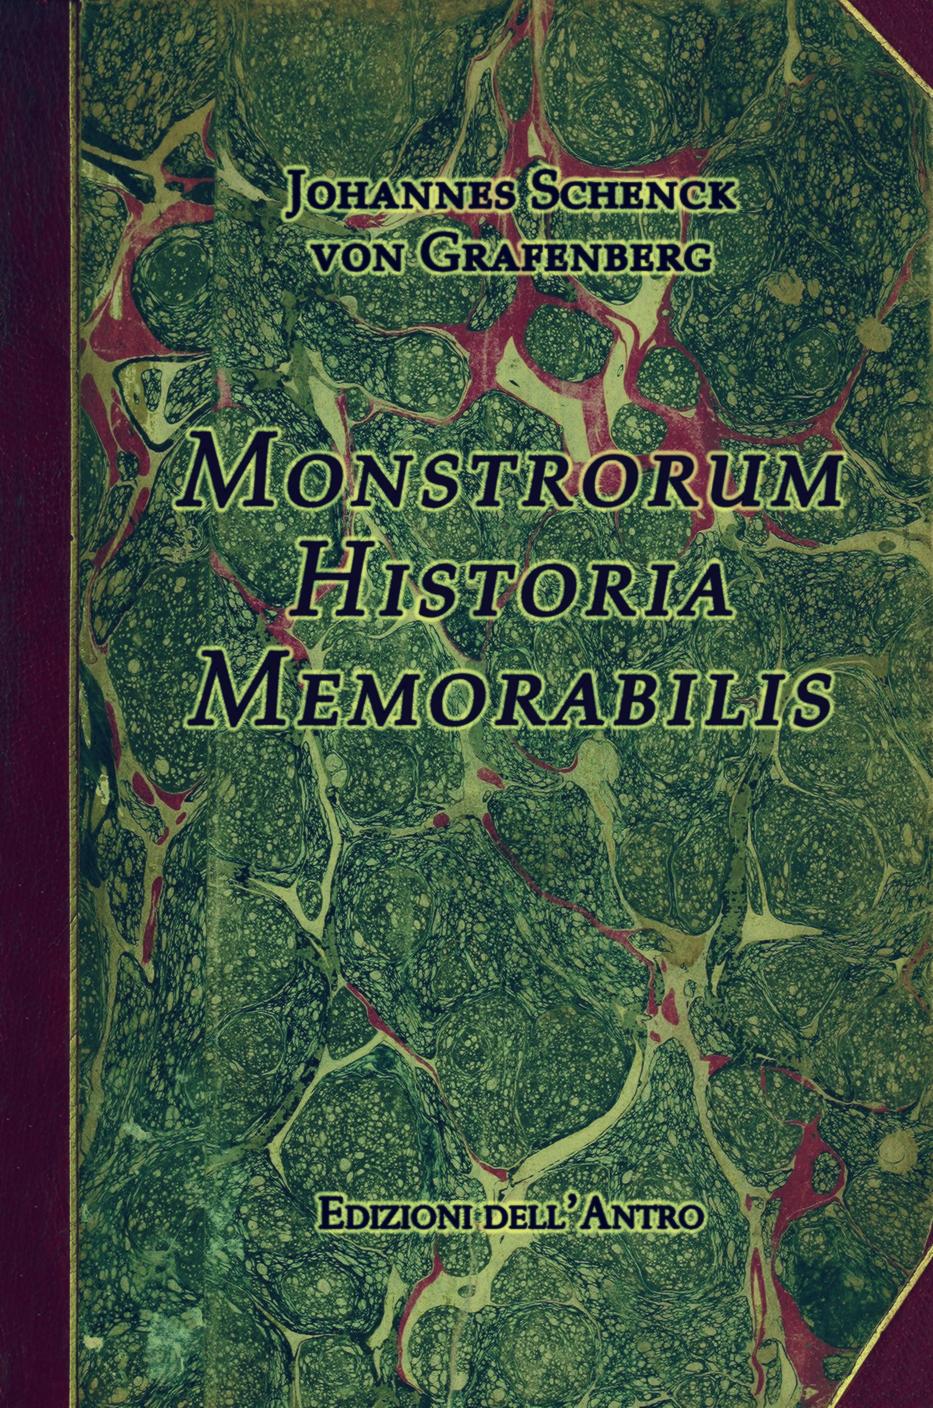 Johannes-Schenck-von-Grafenberg-Monstrorum-Historia-Memorabilis-Ed.-dellAntro-2013-forest